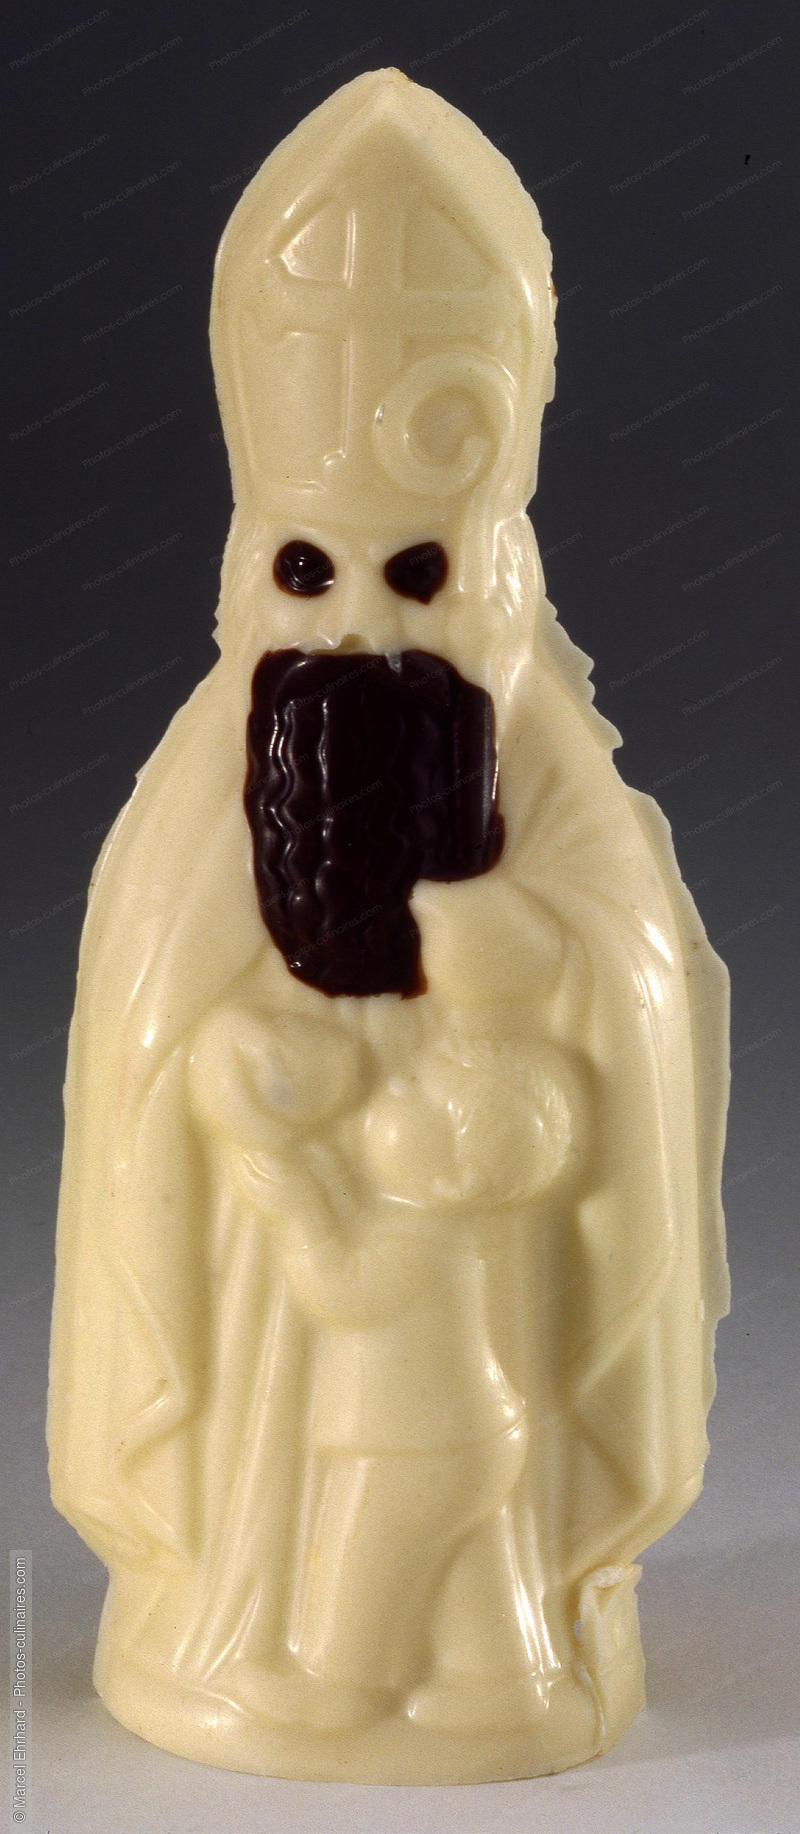 Saint Nicolas en chocolat blanc - photo référence DE281.jpg